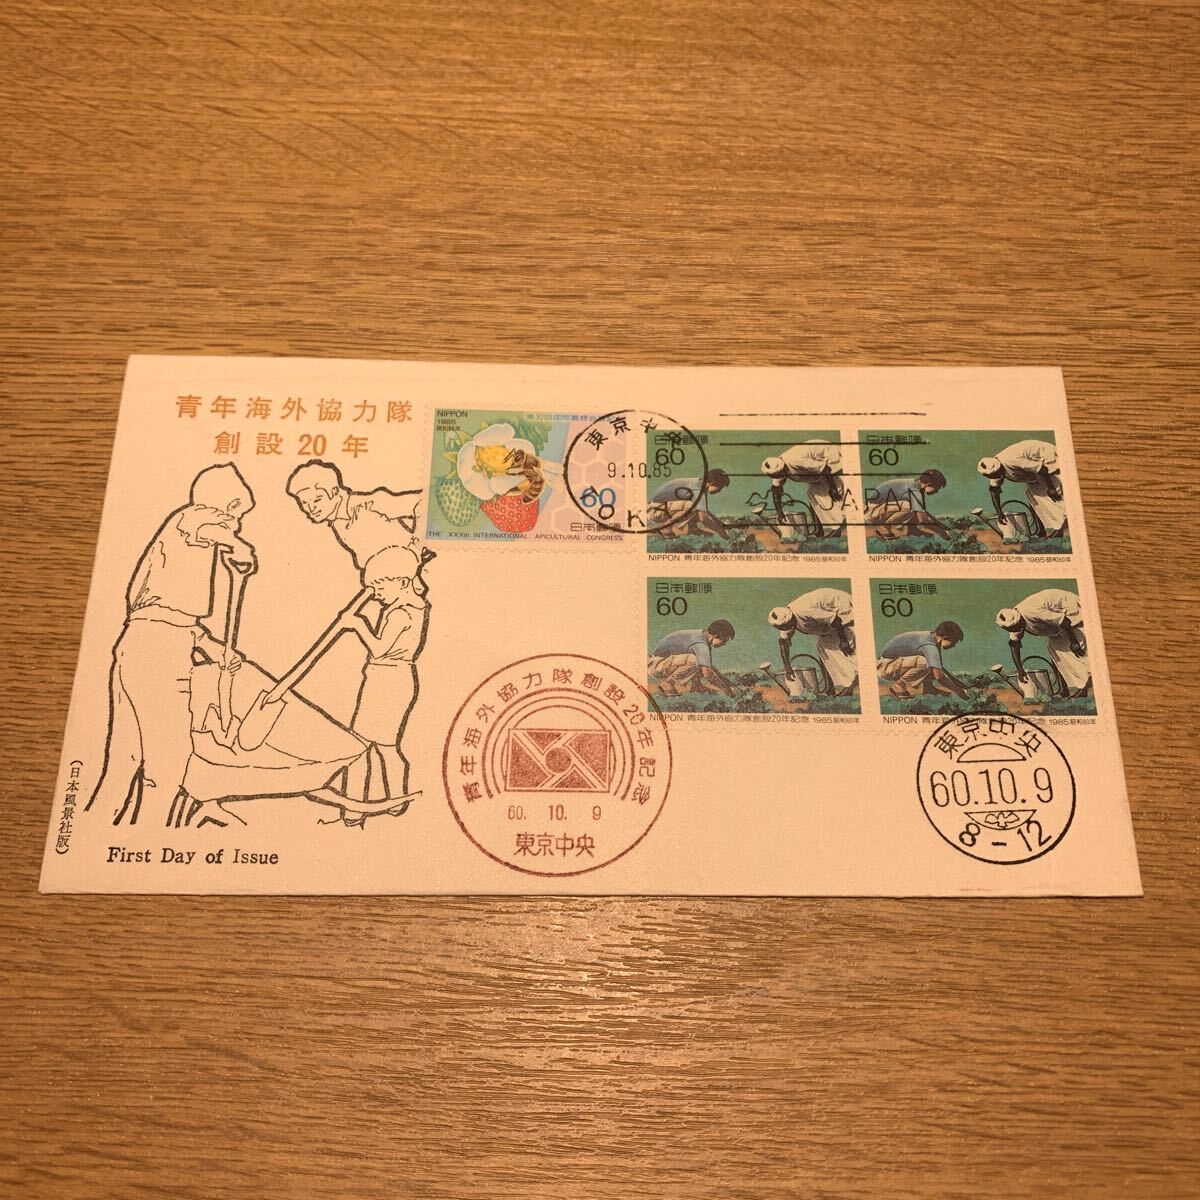 初日カバー 青年海外協力隊 創設20年記念郵便切手 昭和60年発行 日本風景社版の画像1